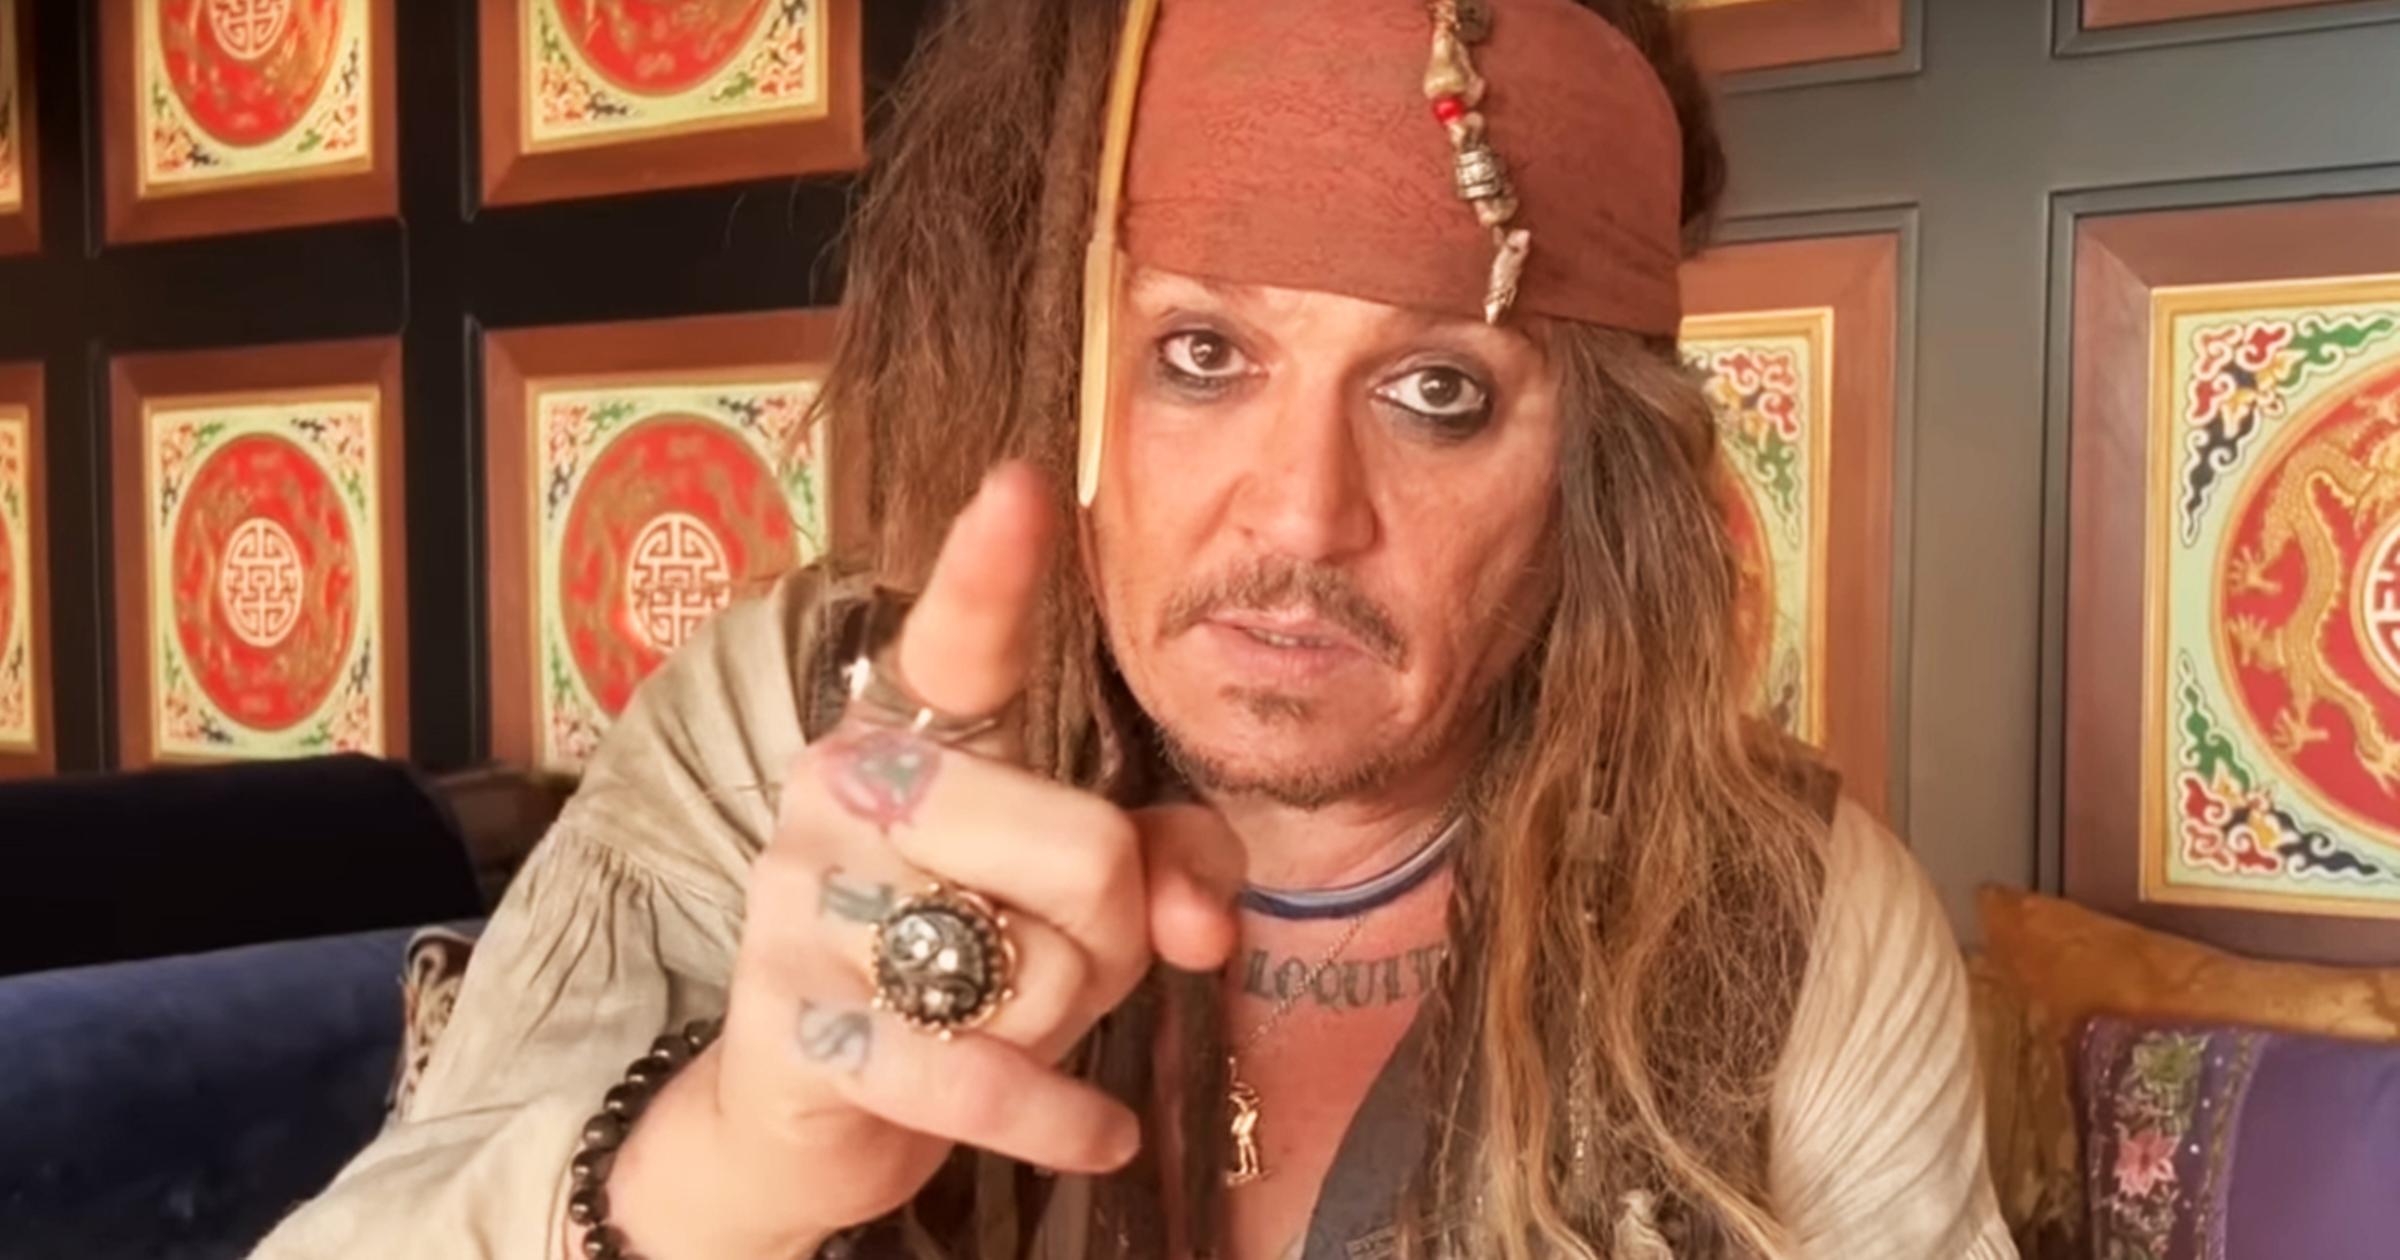 [VIDEO] Johnny Depp torna nel "ruolo" di Jack Sparrow per esaudire il desiderio di un giovane fan